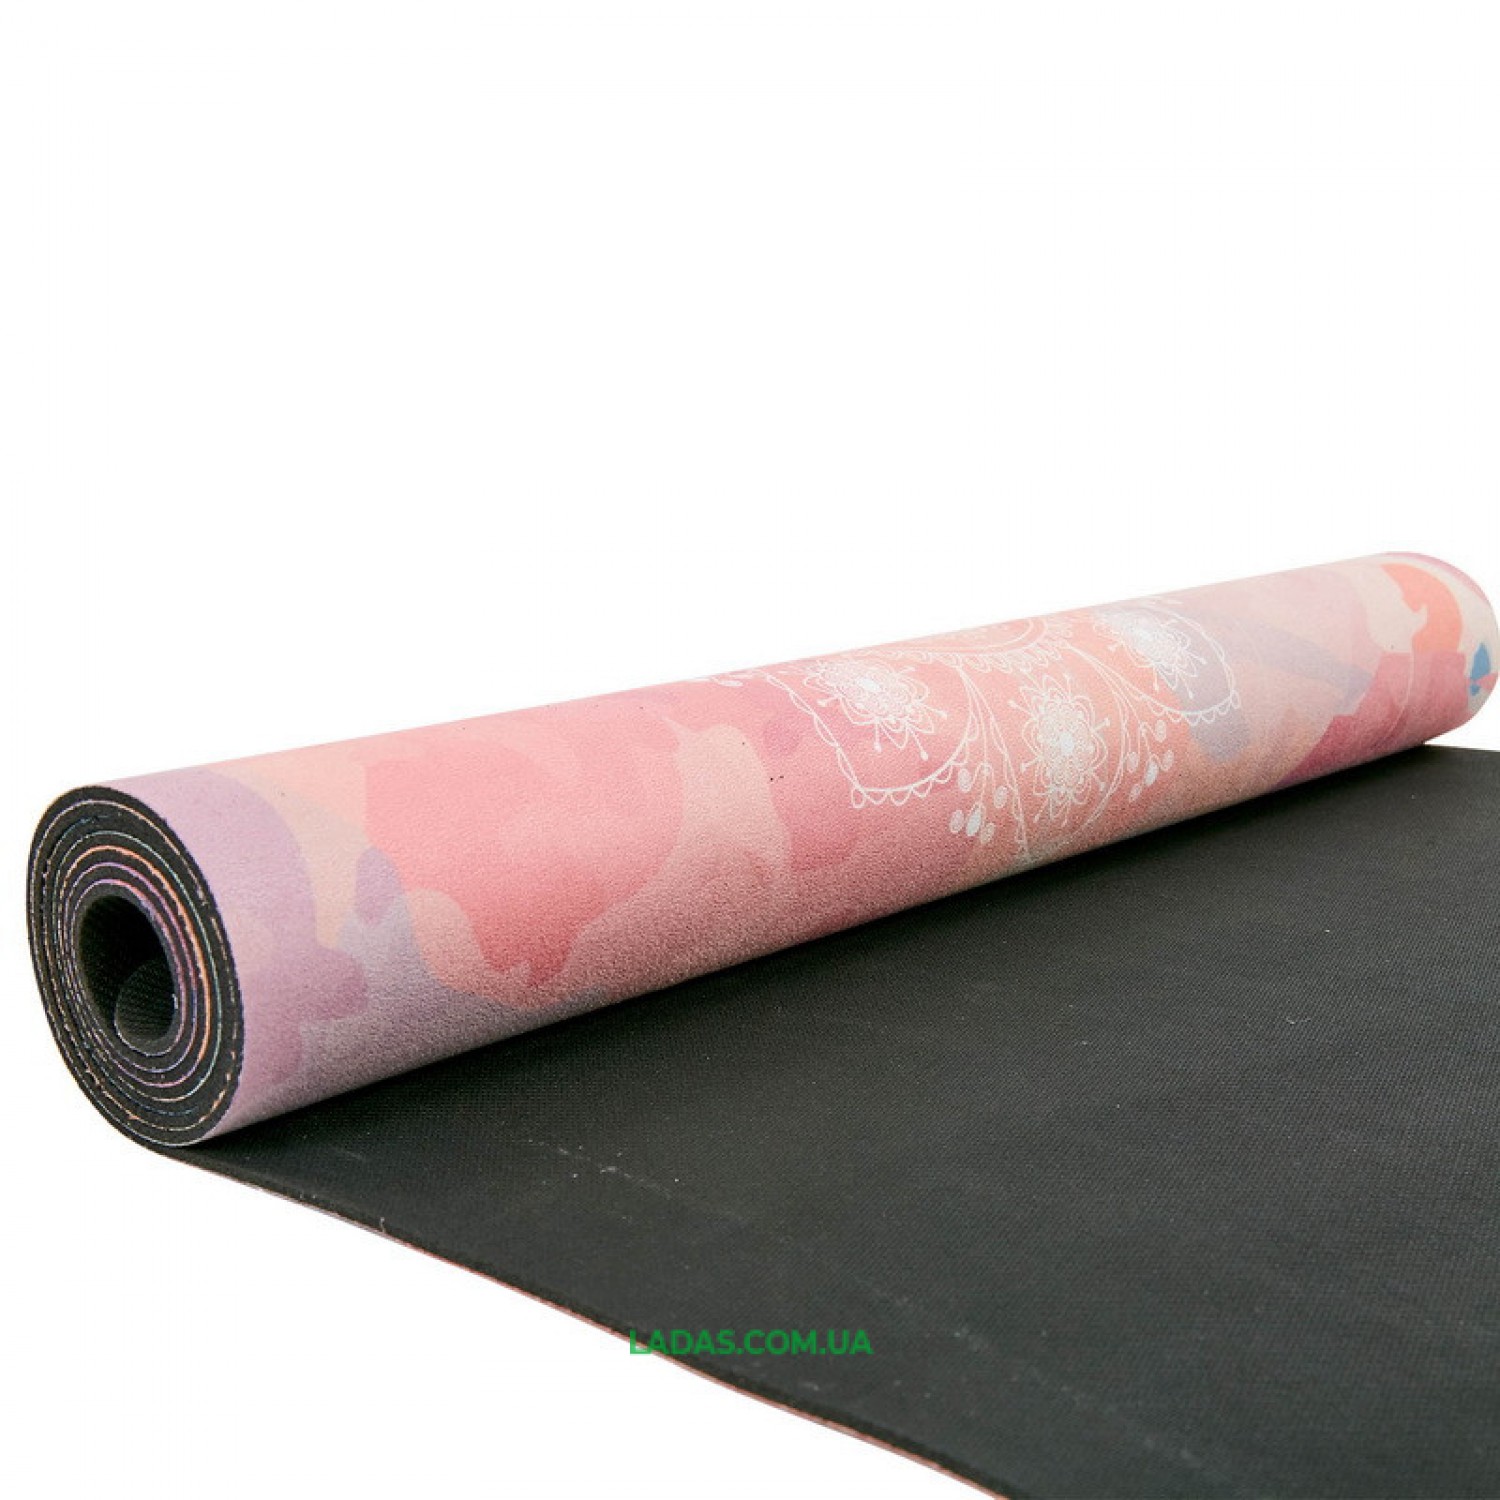 Коврик для йоги и фитнеса замшево-каучуковый двухслойный (1,83мx0,61мx3мм)